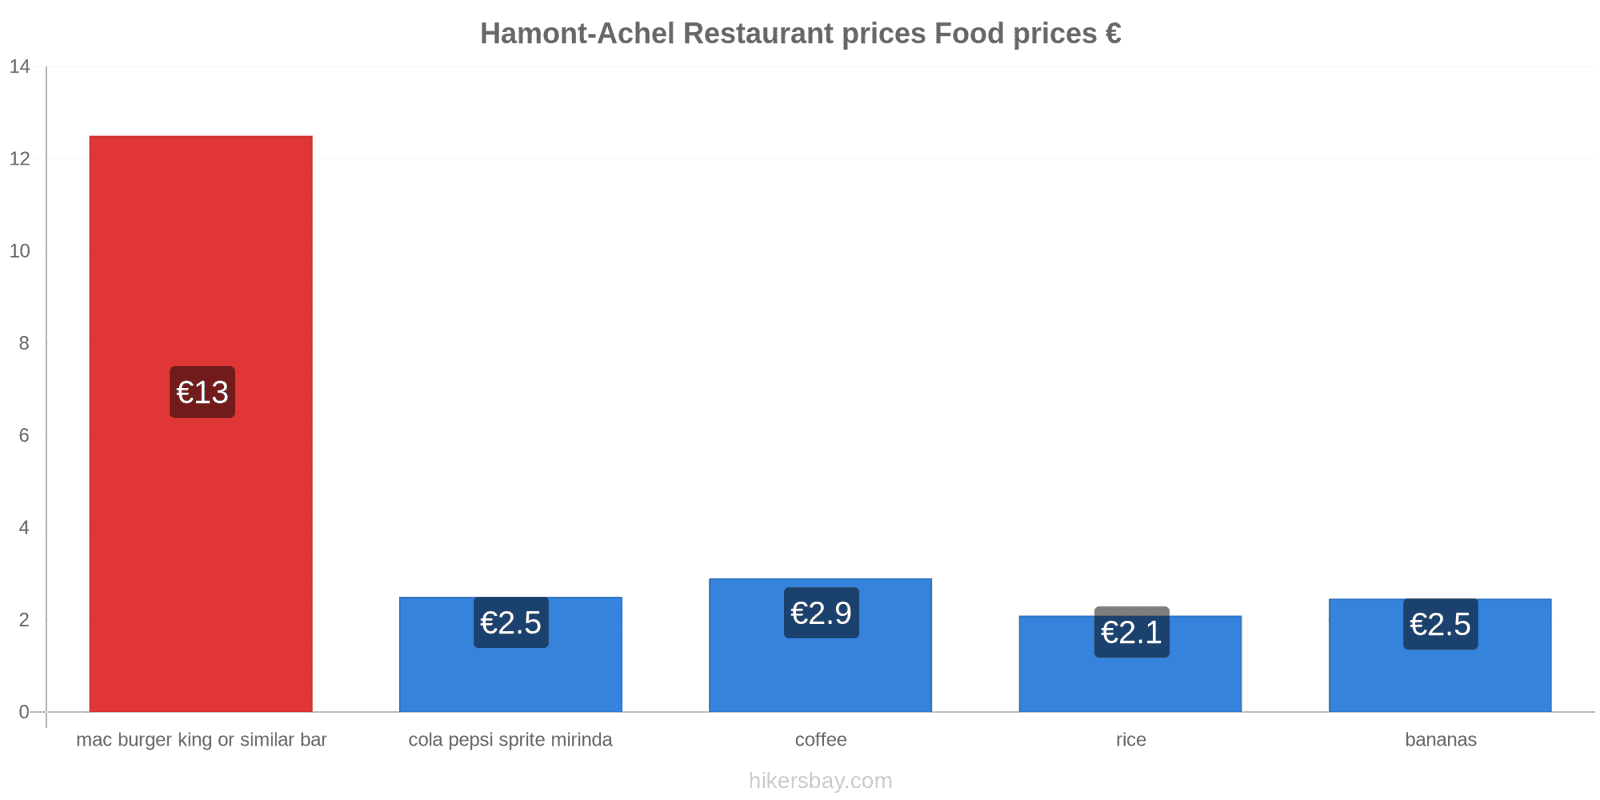 Hamont-Achel price changes hikersbay.com